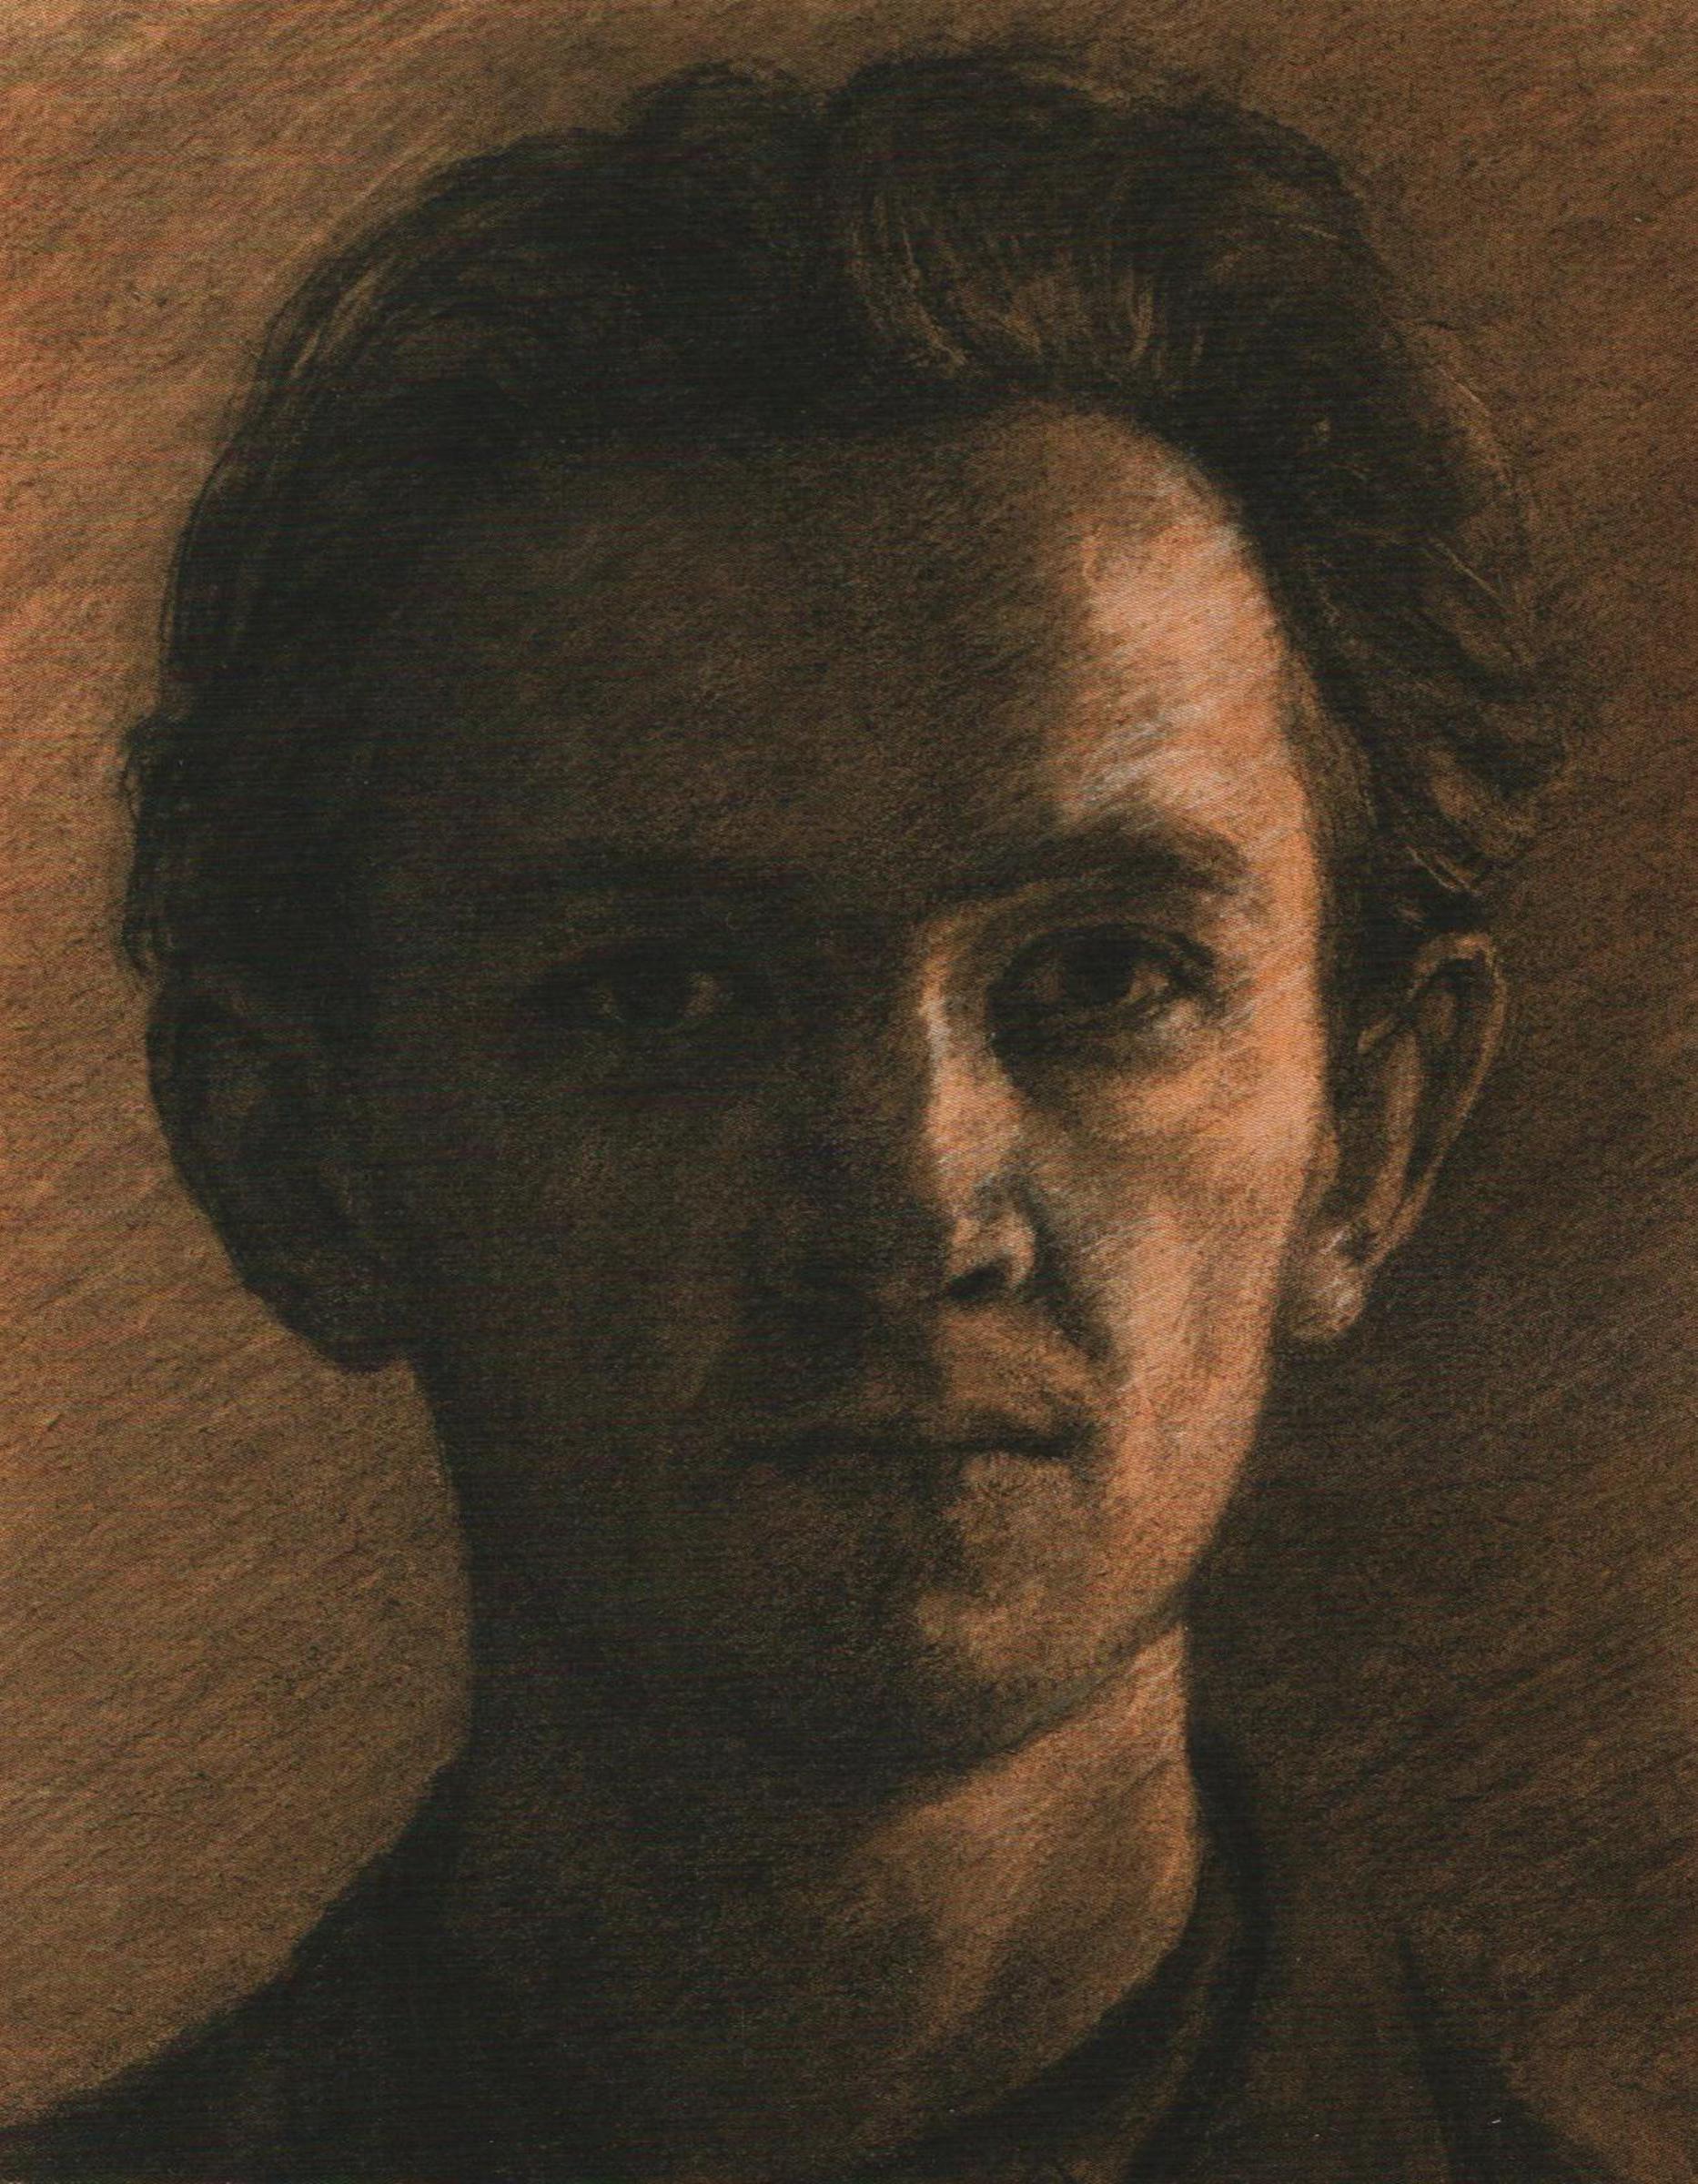 Autoportrét, 1954, 32 x 25 cm, kresba uhlem, malováno v Josefově studentském, špatně osvětleném bytě v ul. Karoliny Světlé; návrh pro olej (který byl doplněn zobrazením malířovy ruky)